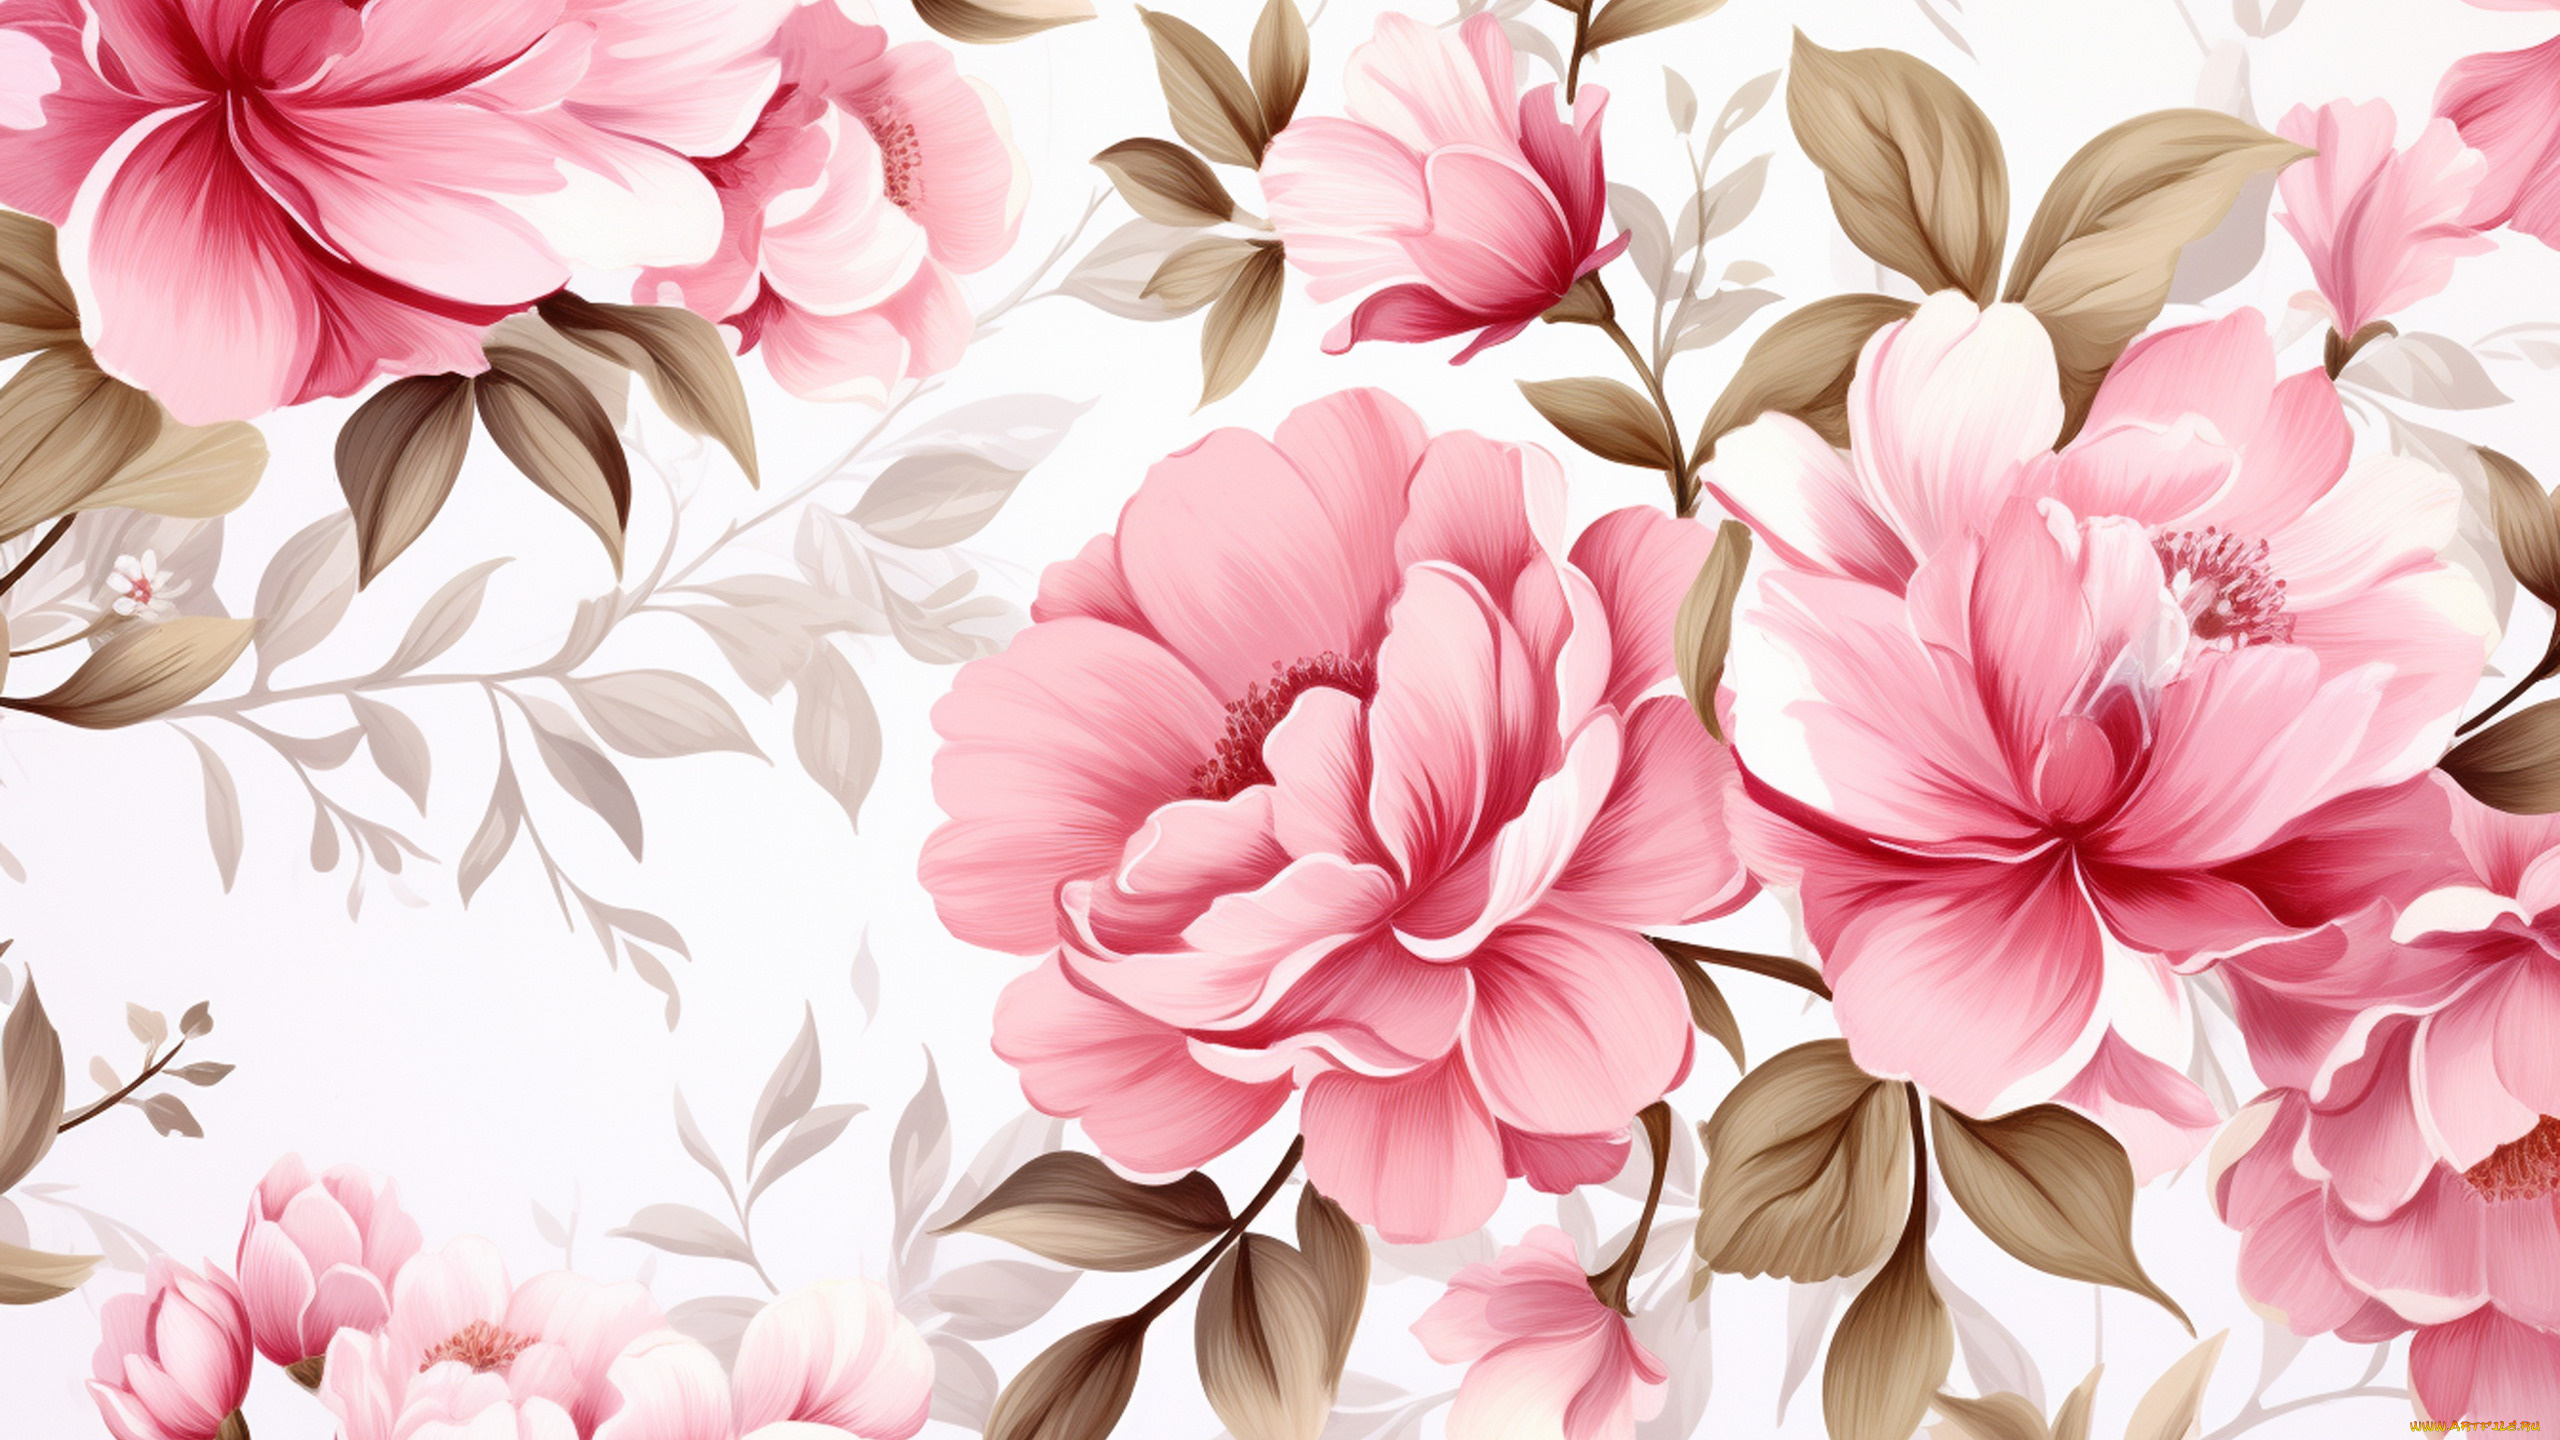 рисованное, цветы, листья, текстура, весна, белый, фон, розовые, пионы, пион